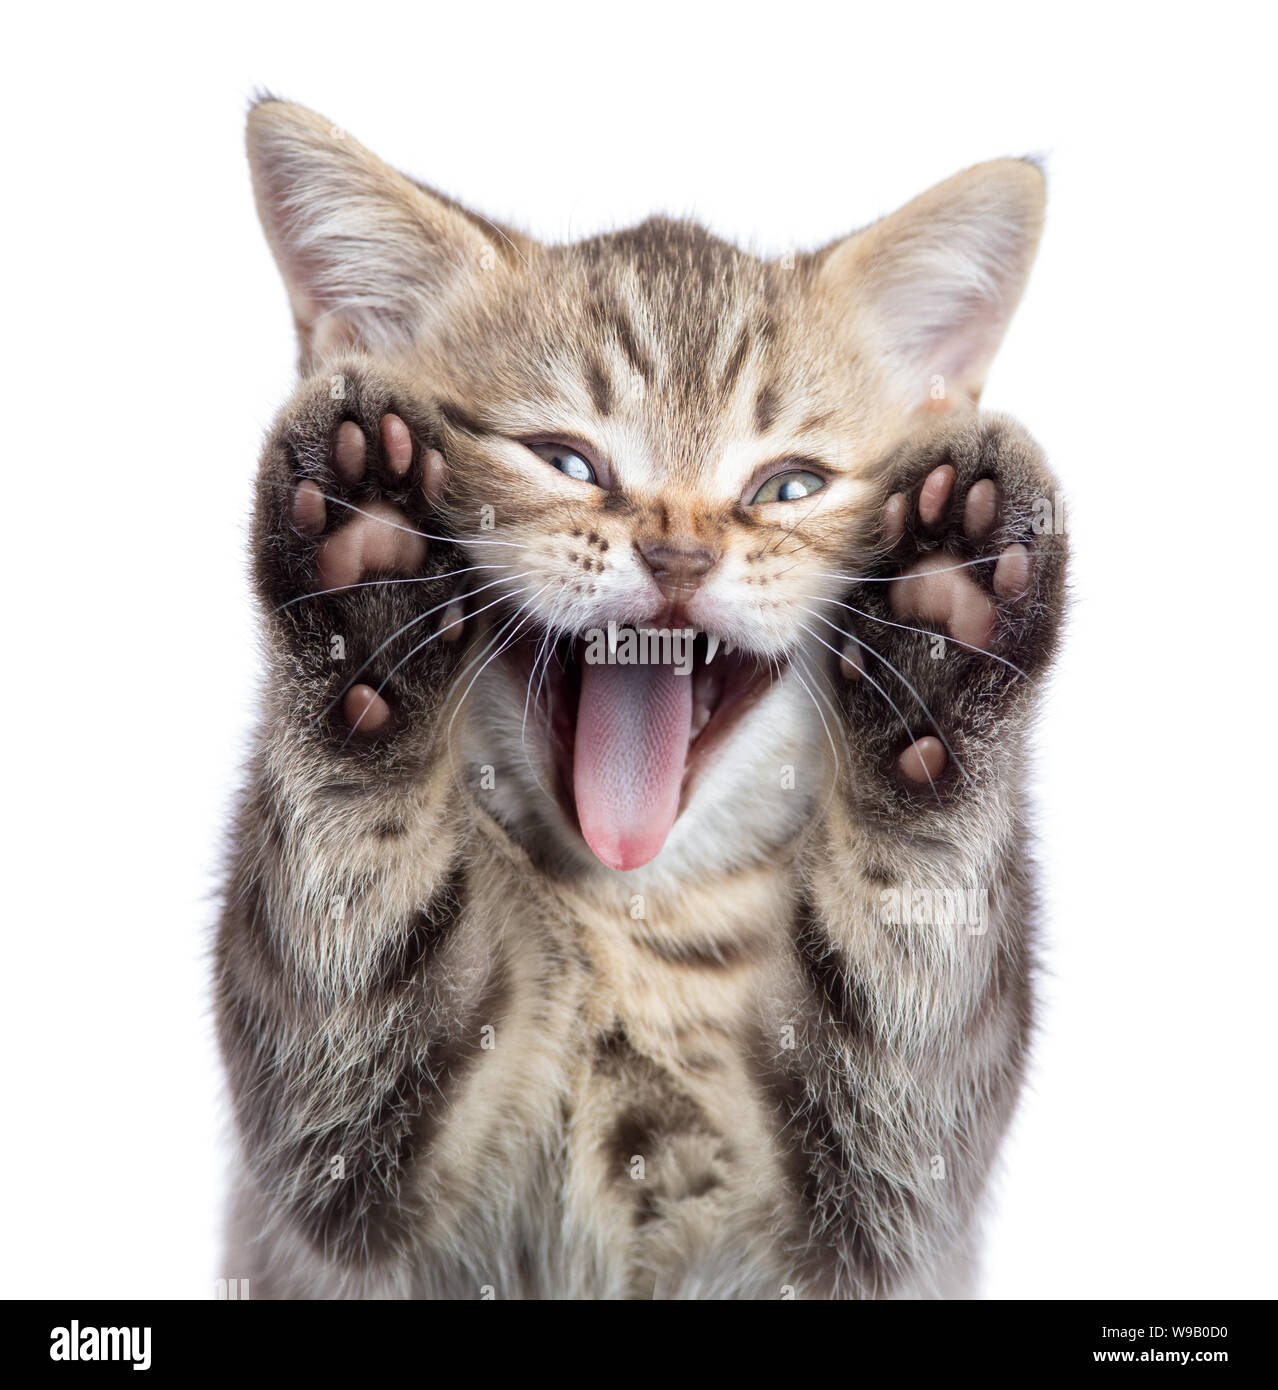 Portrait de chat chaton drôle avec la bouche ouverte et deux pattes uoisolated Banque D'Images